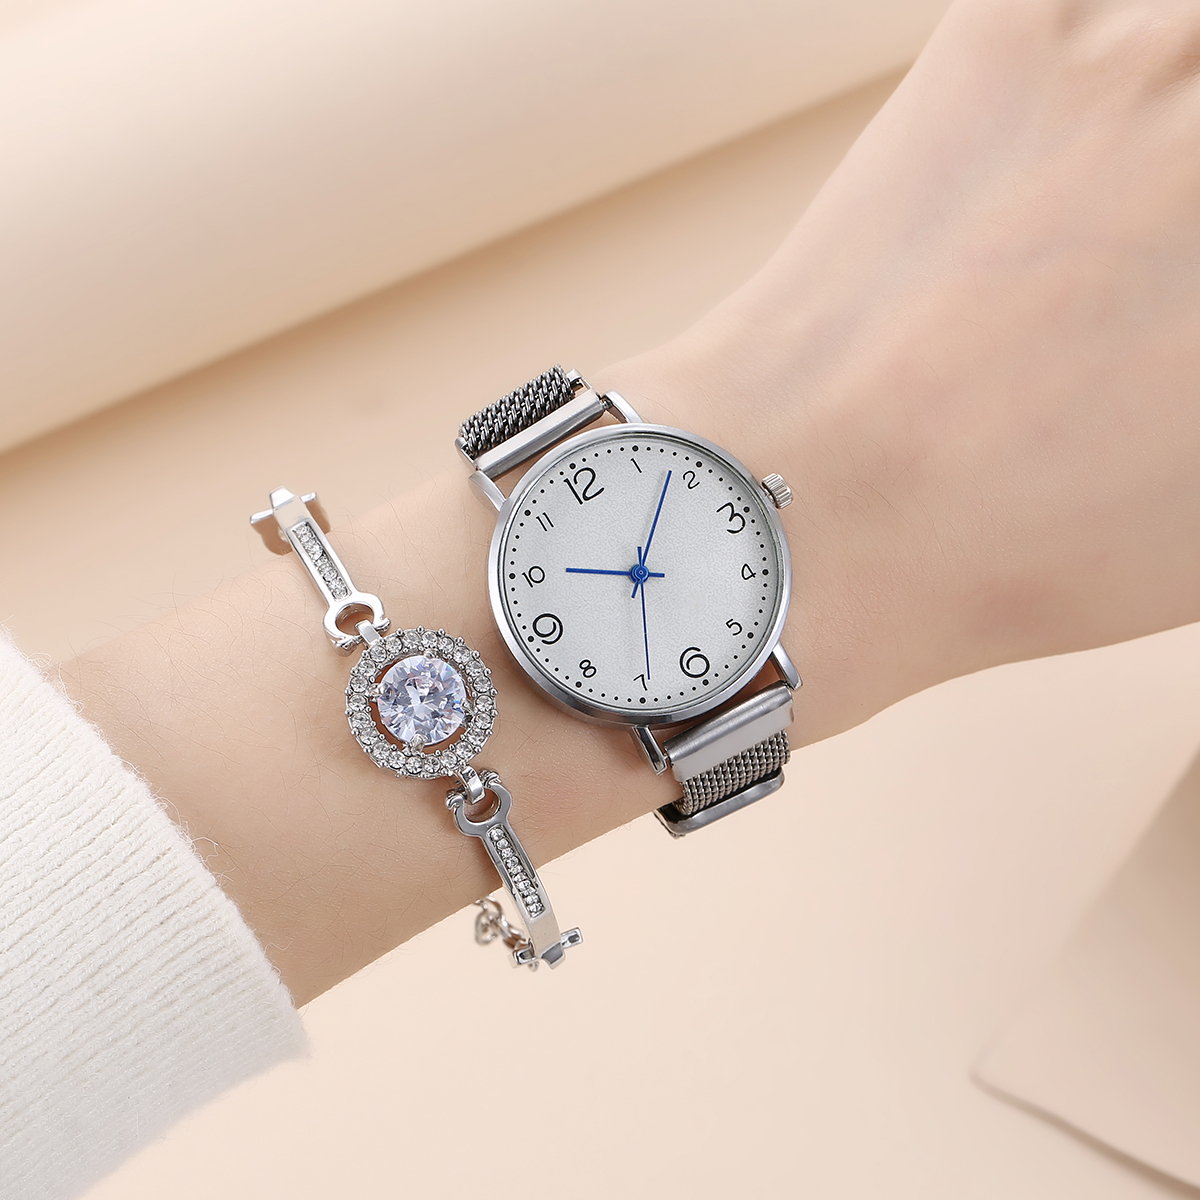 Petite montre  quartz haut de gamme personnalise  la mode simple et  la modepicture4